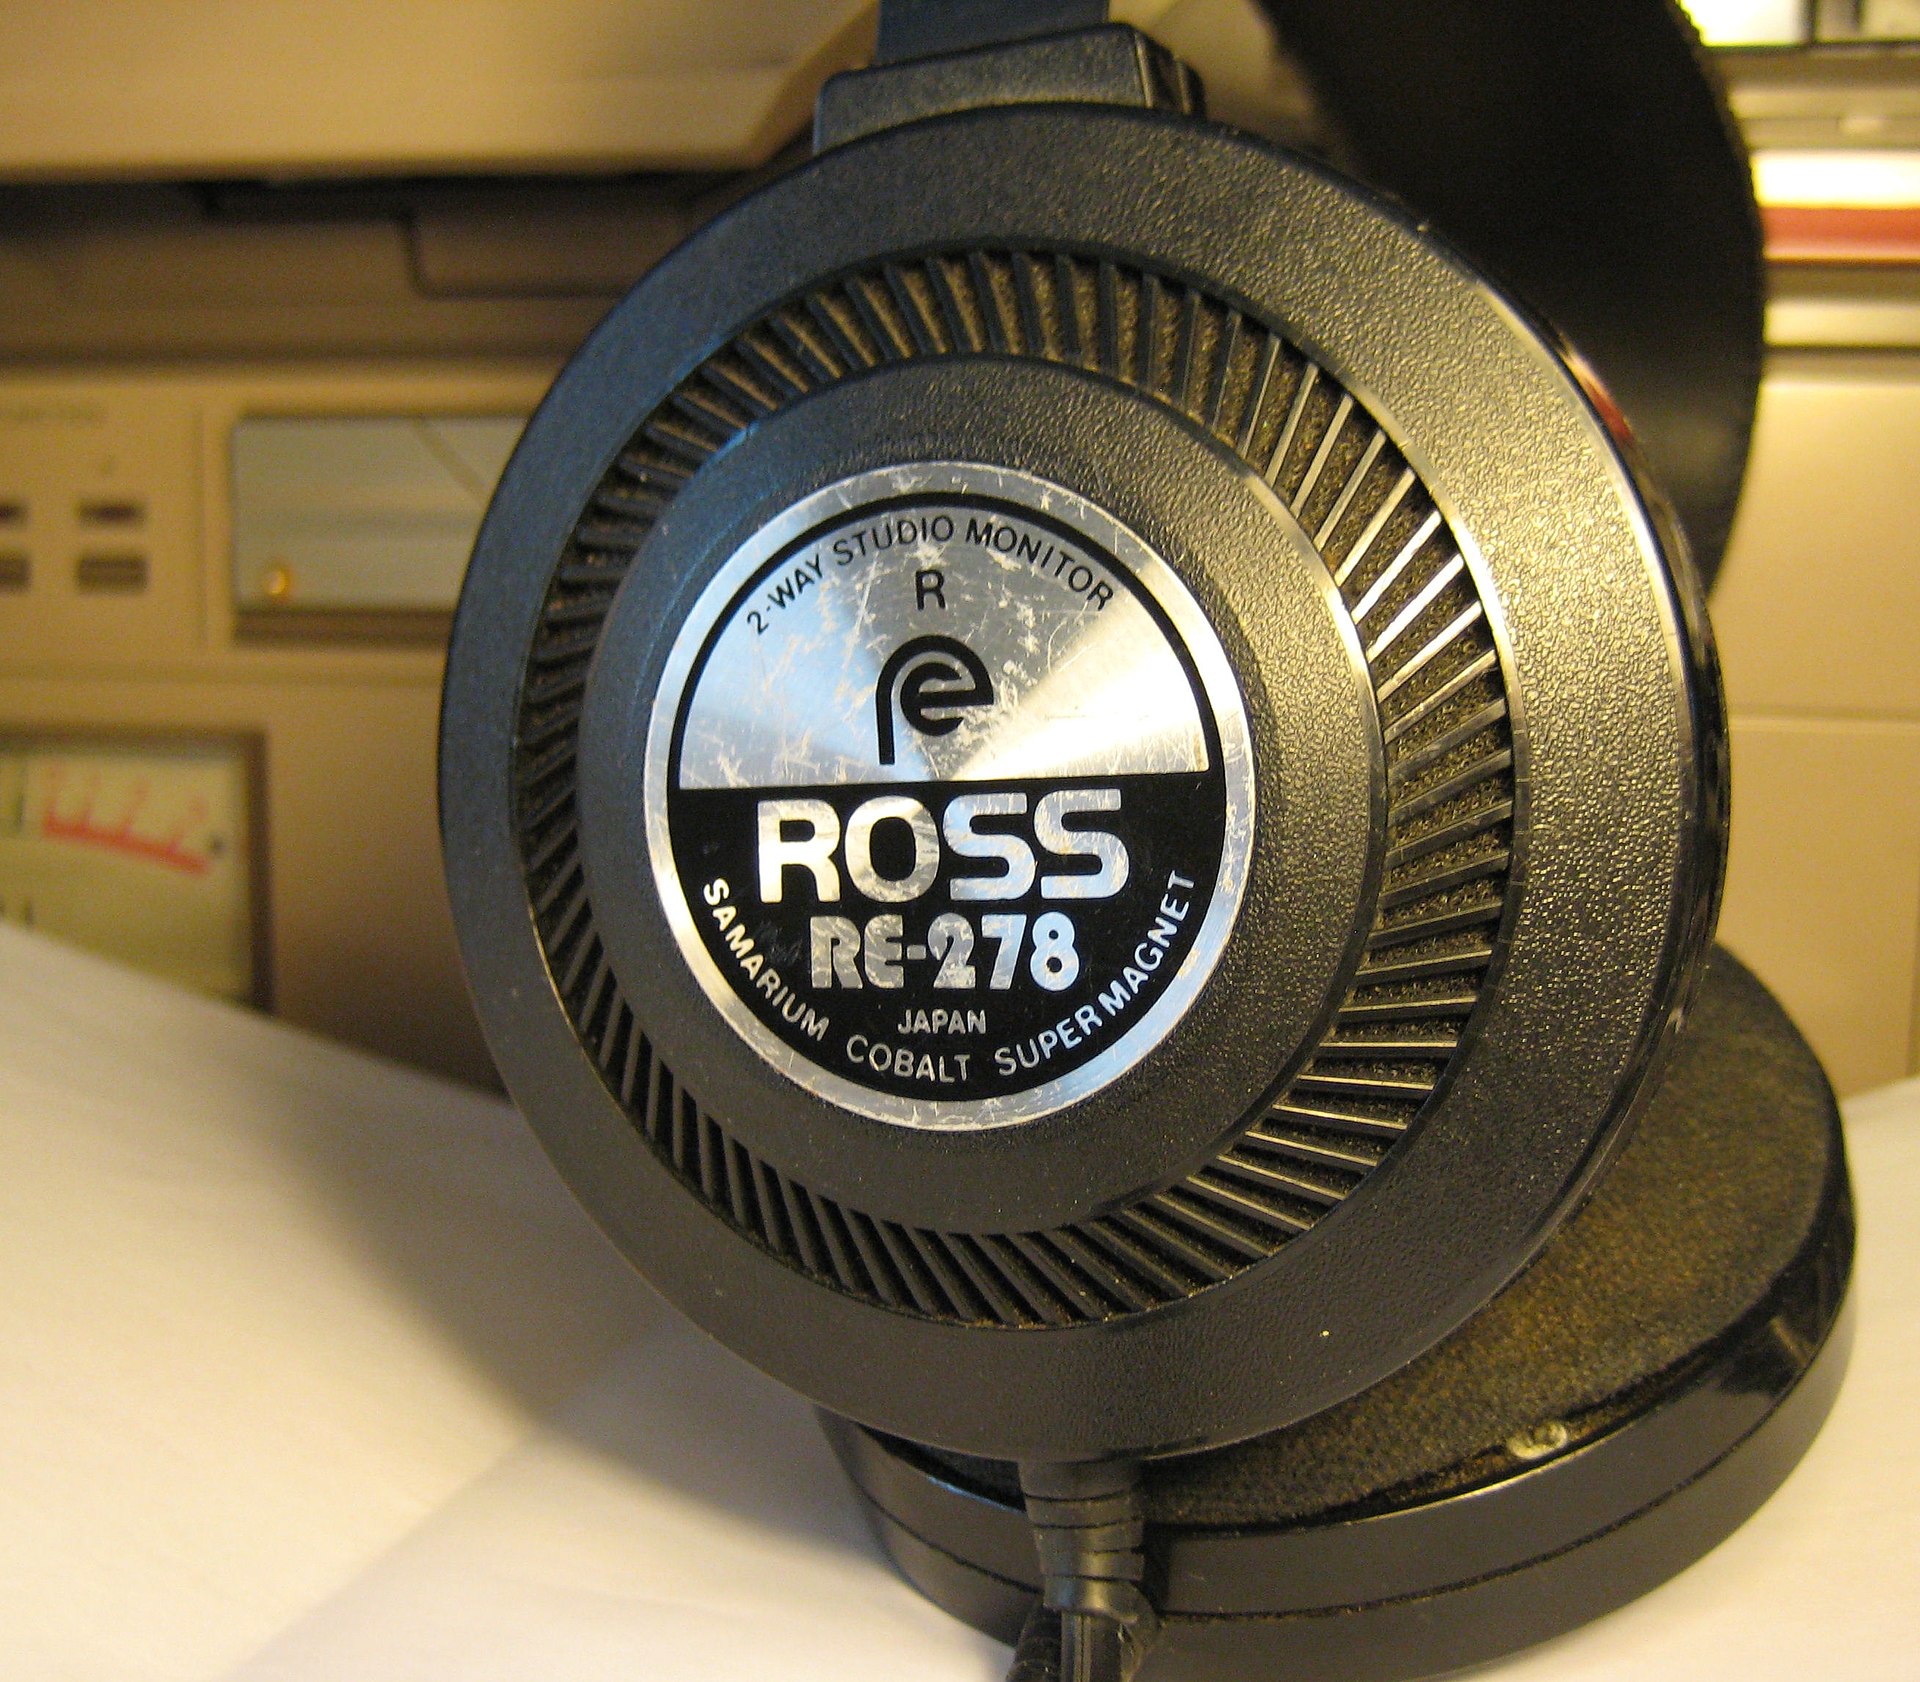 Vintage slušalice iz 1980-ih koje koriste magnete od samarijum kobalta